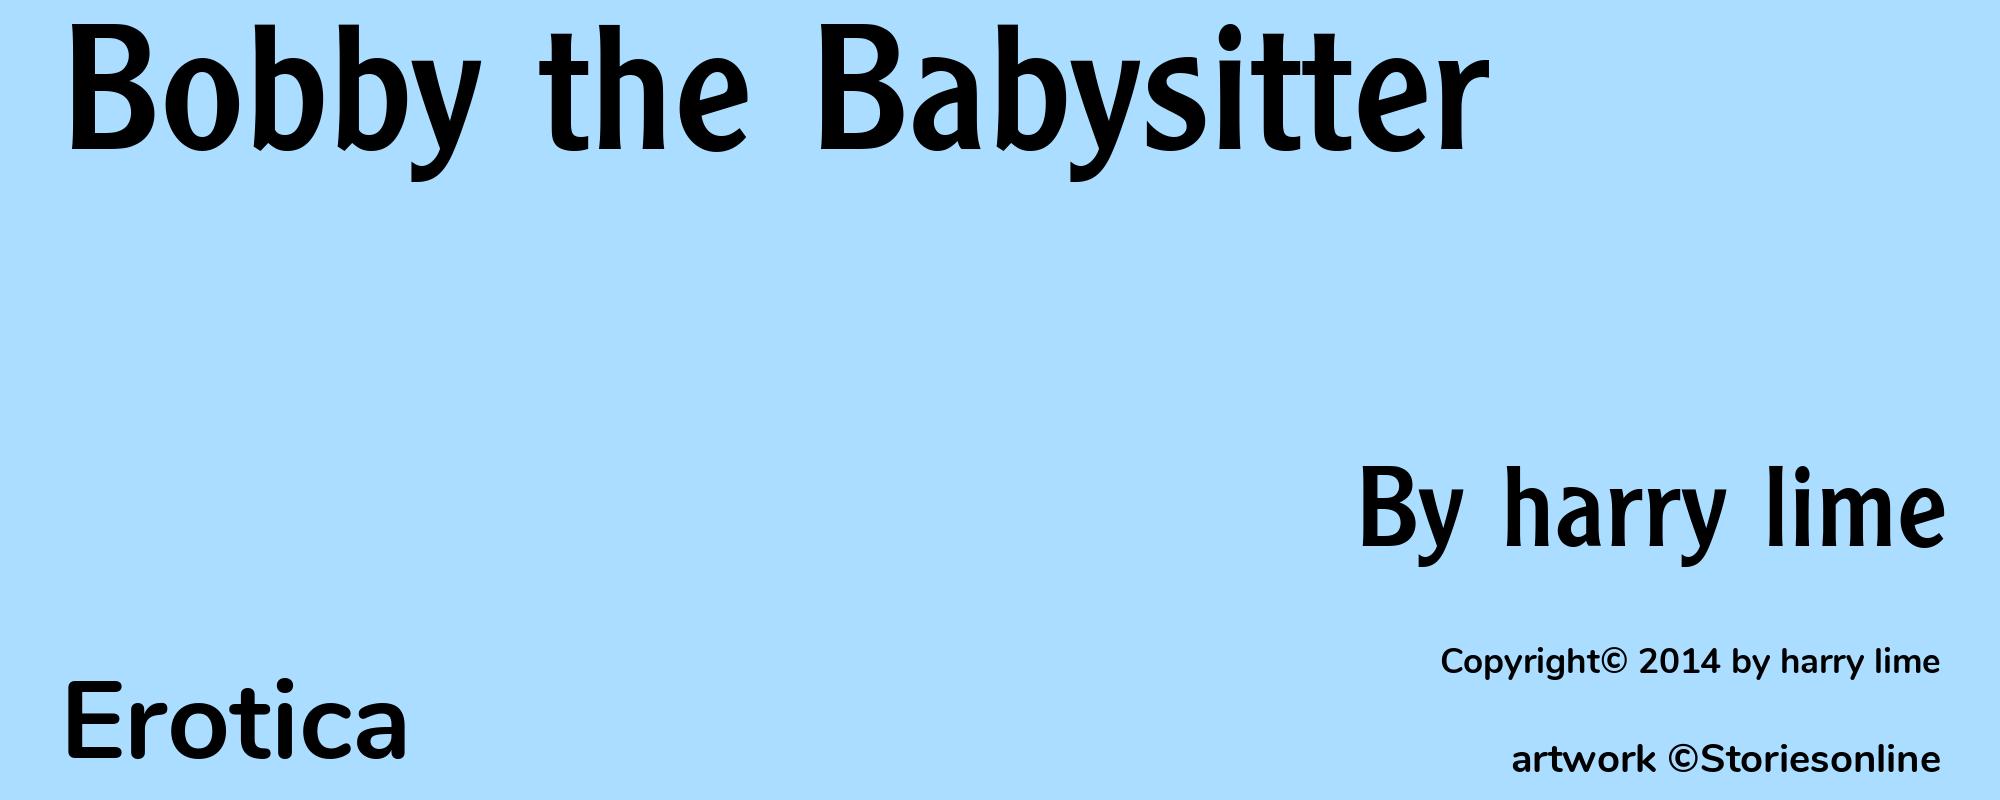 Bobby the Babysitter - Cover